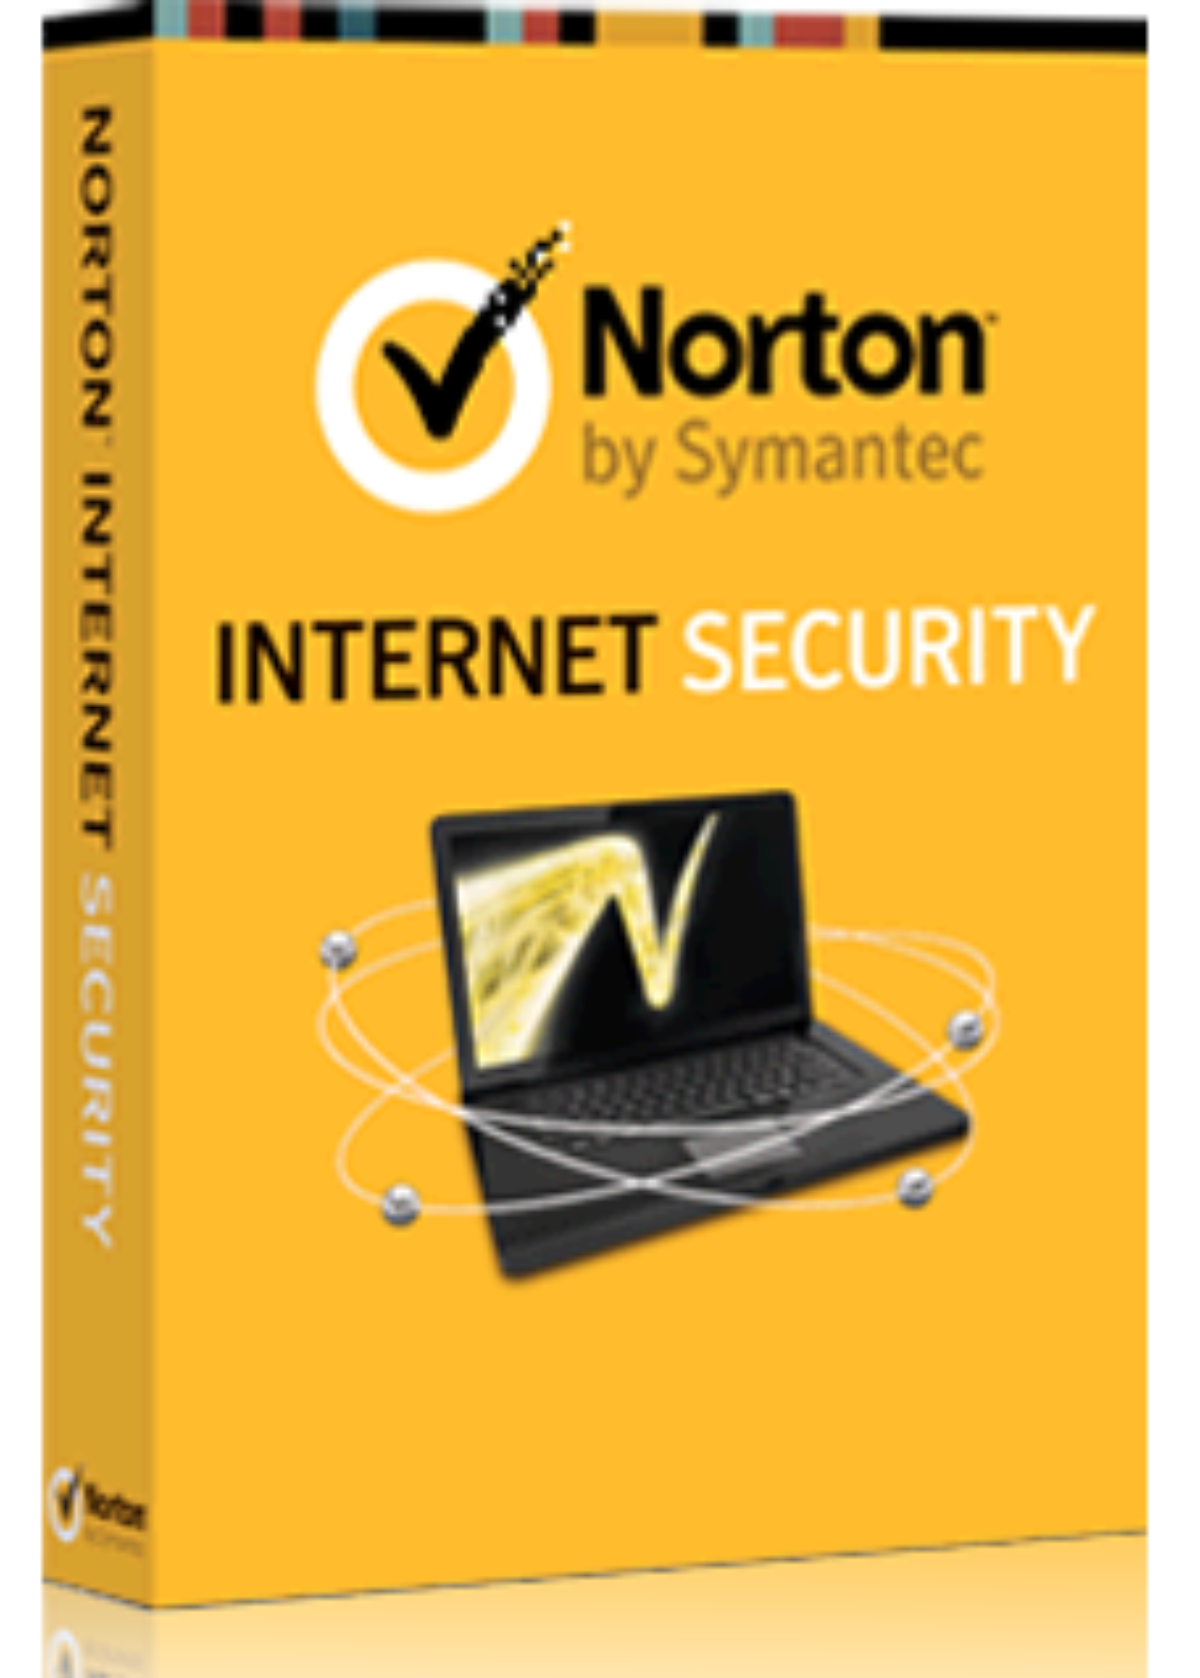 norton antivirus for mac download trial